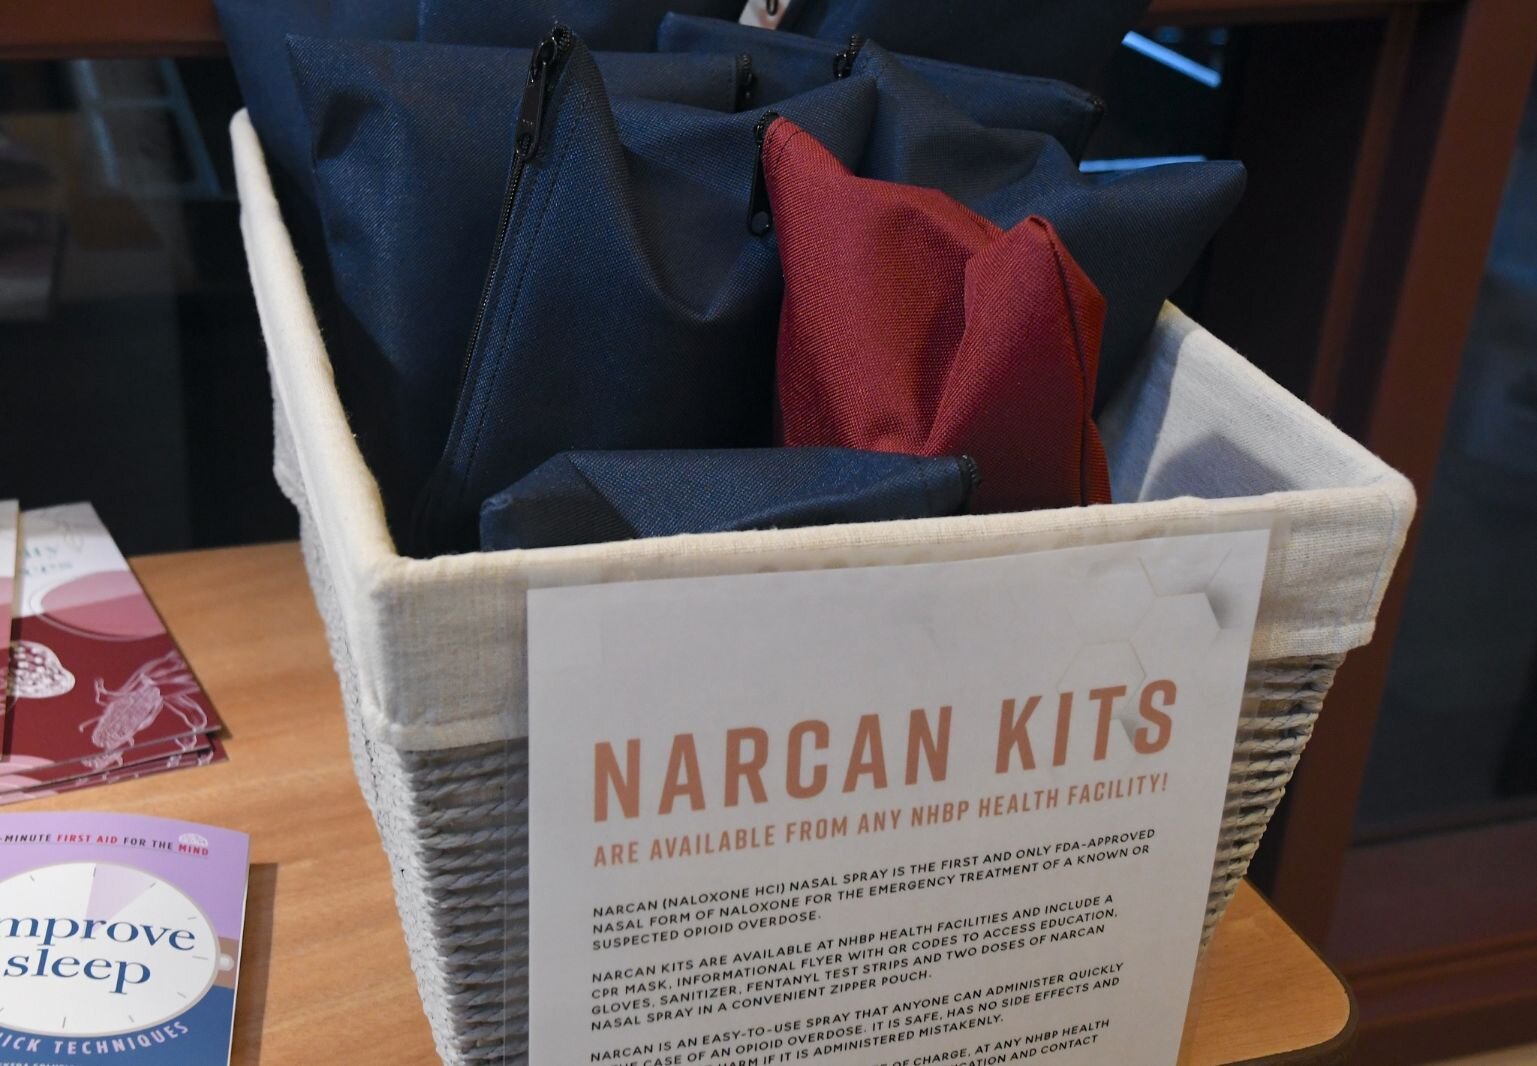 Narcan kits at the NHBP Health Center in Fulton.